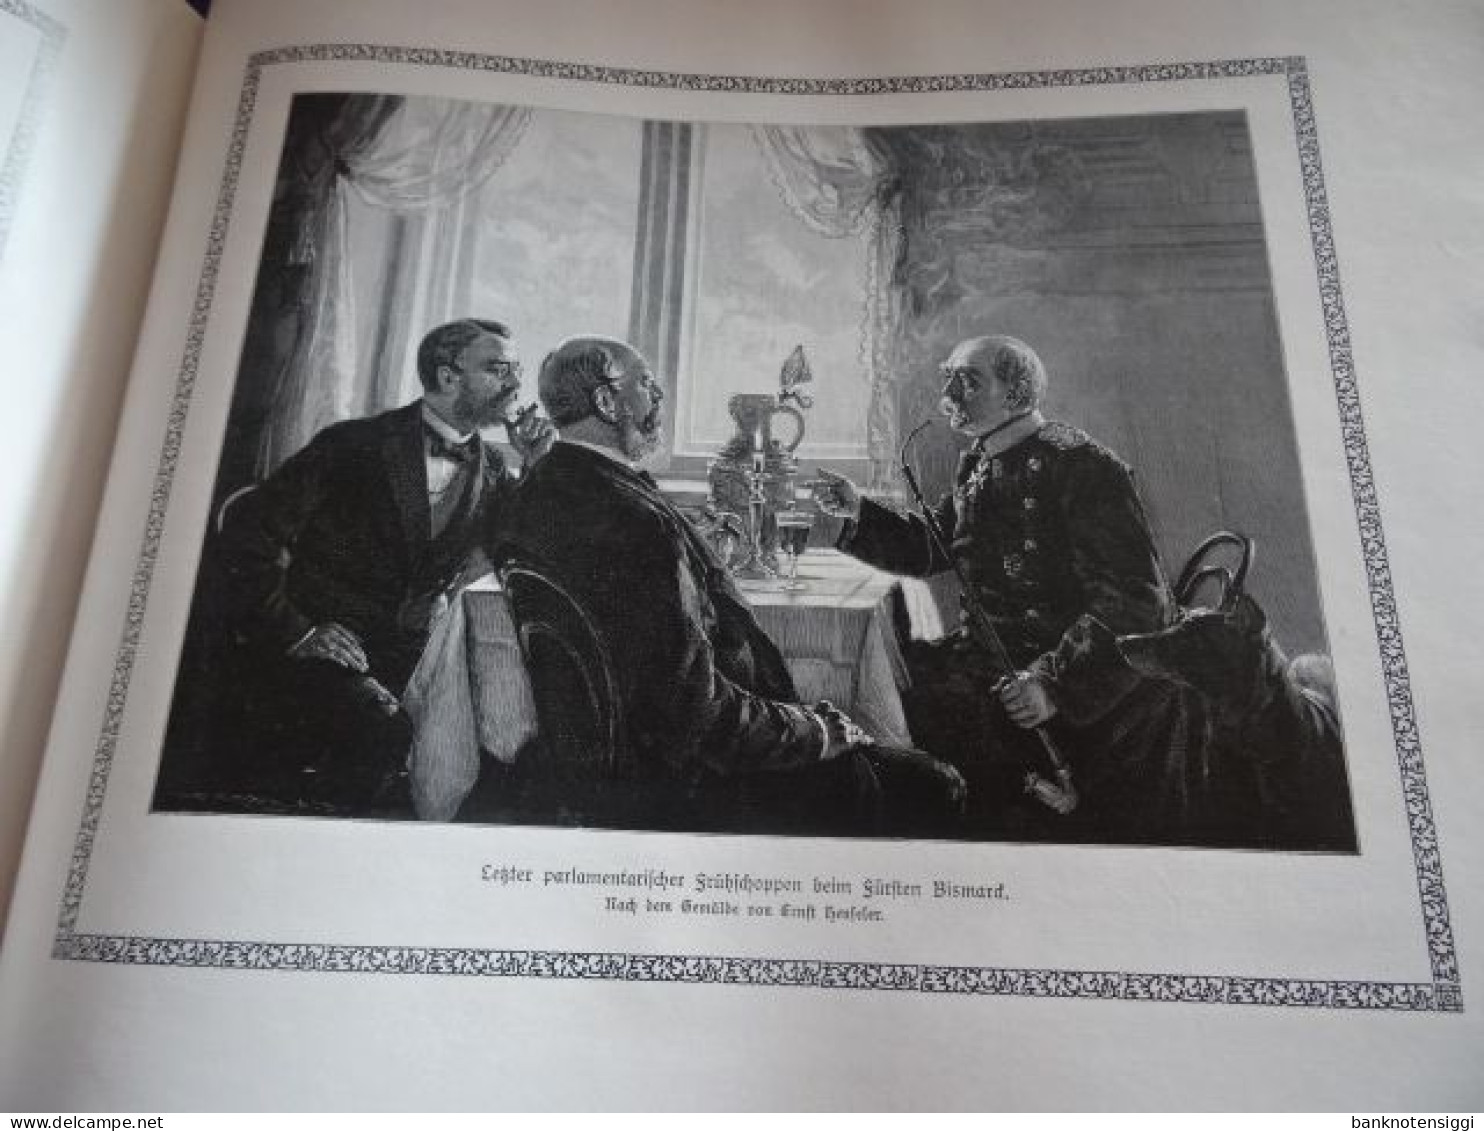 b1 Buch BISMARK "Das Jahrhundert der Deutschen Einigung  in Wort und Bild  1815 bis 1915